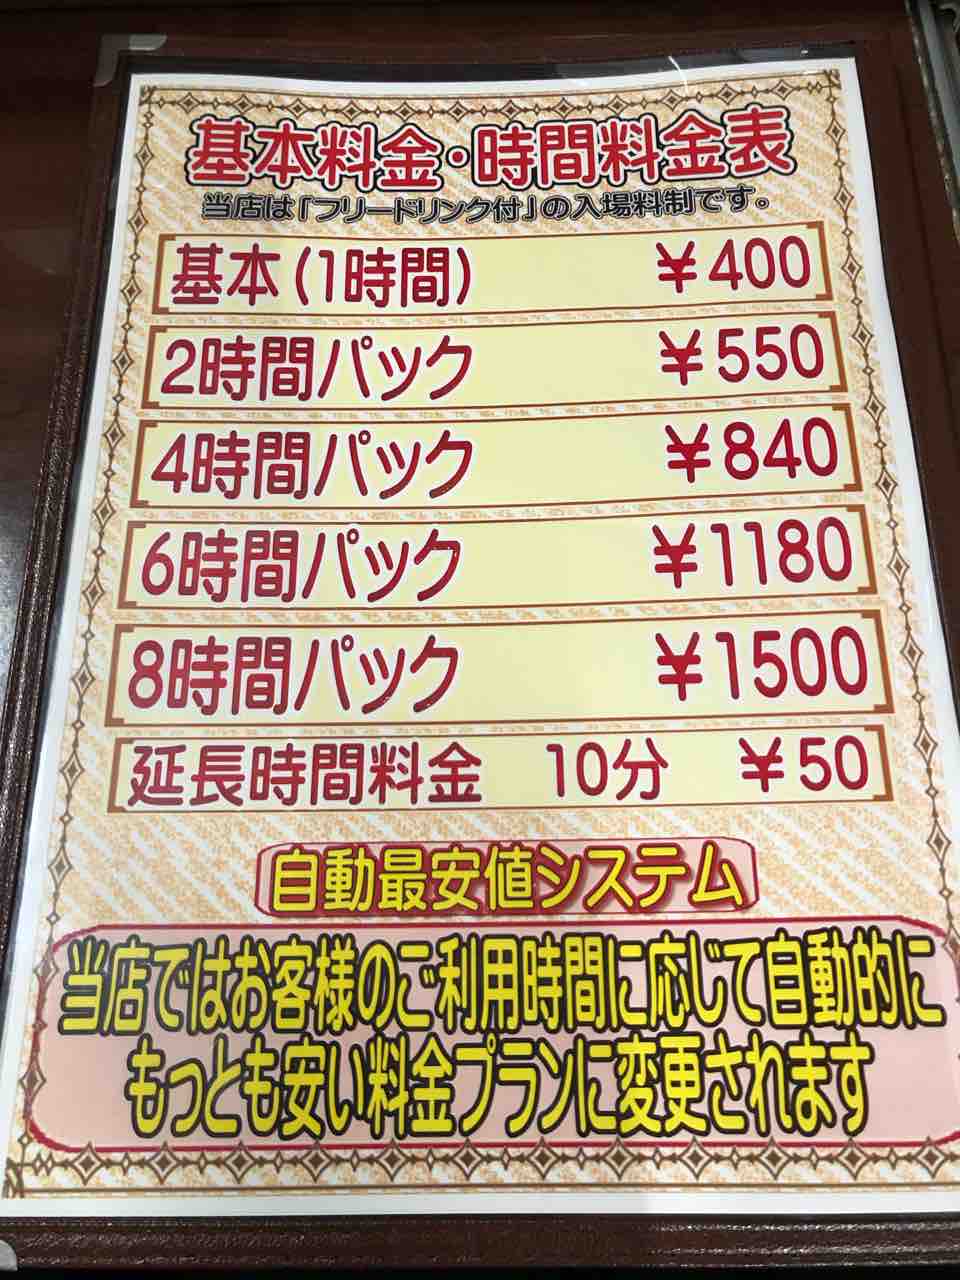 「まんが喫茶キャプテン 江南店」基本料金